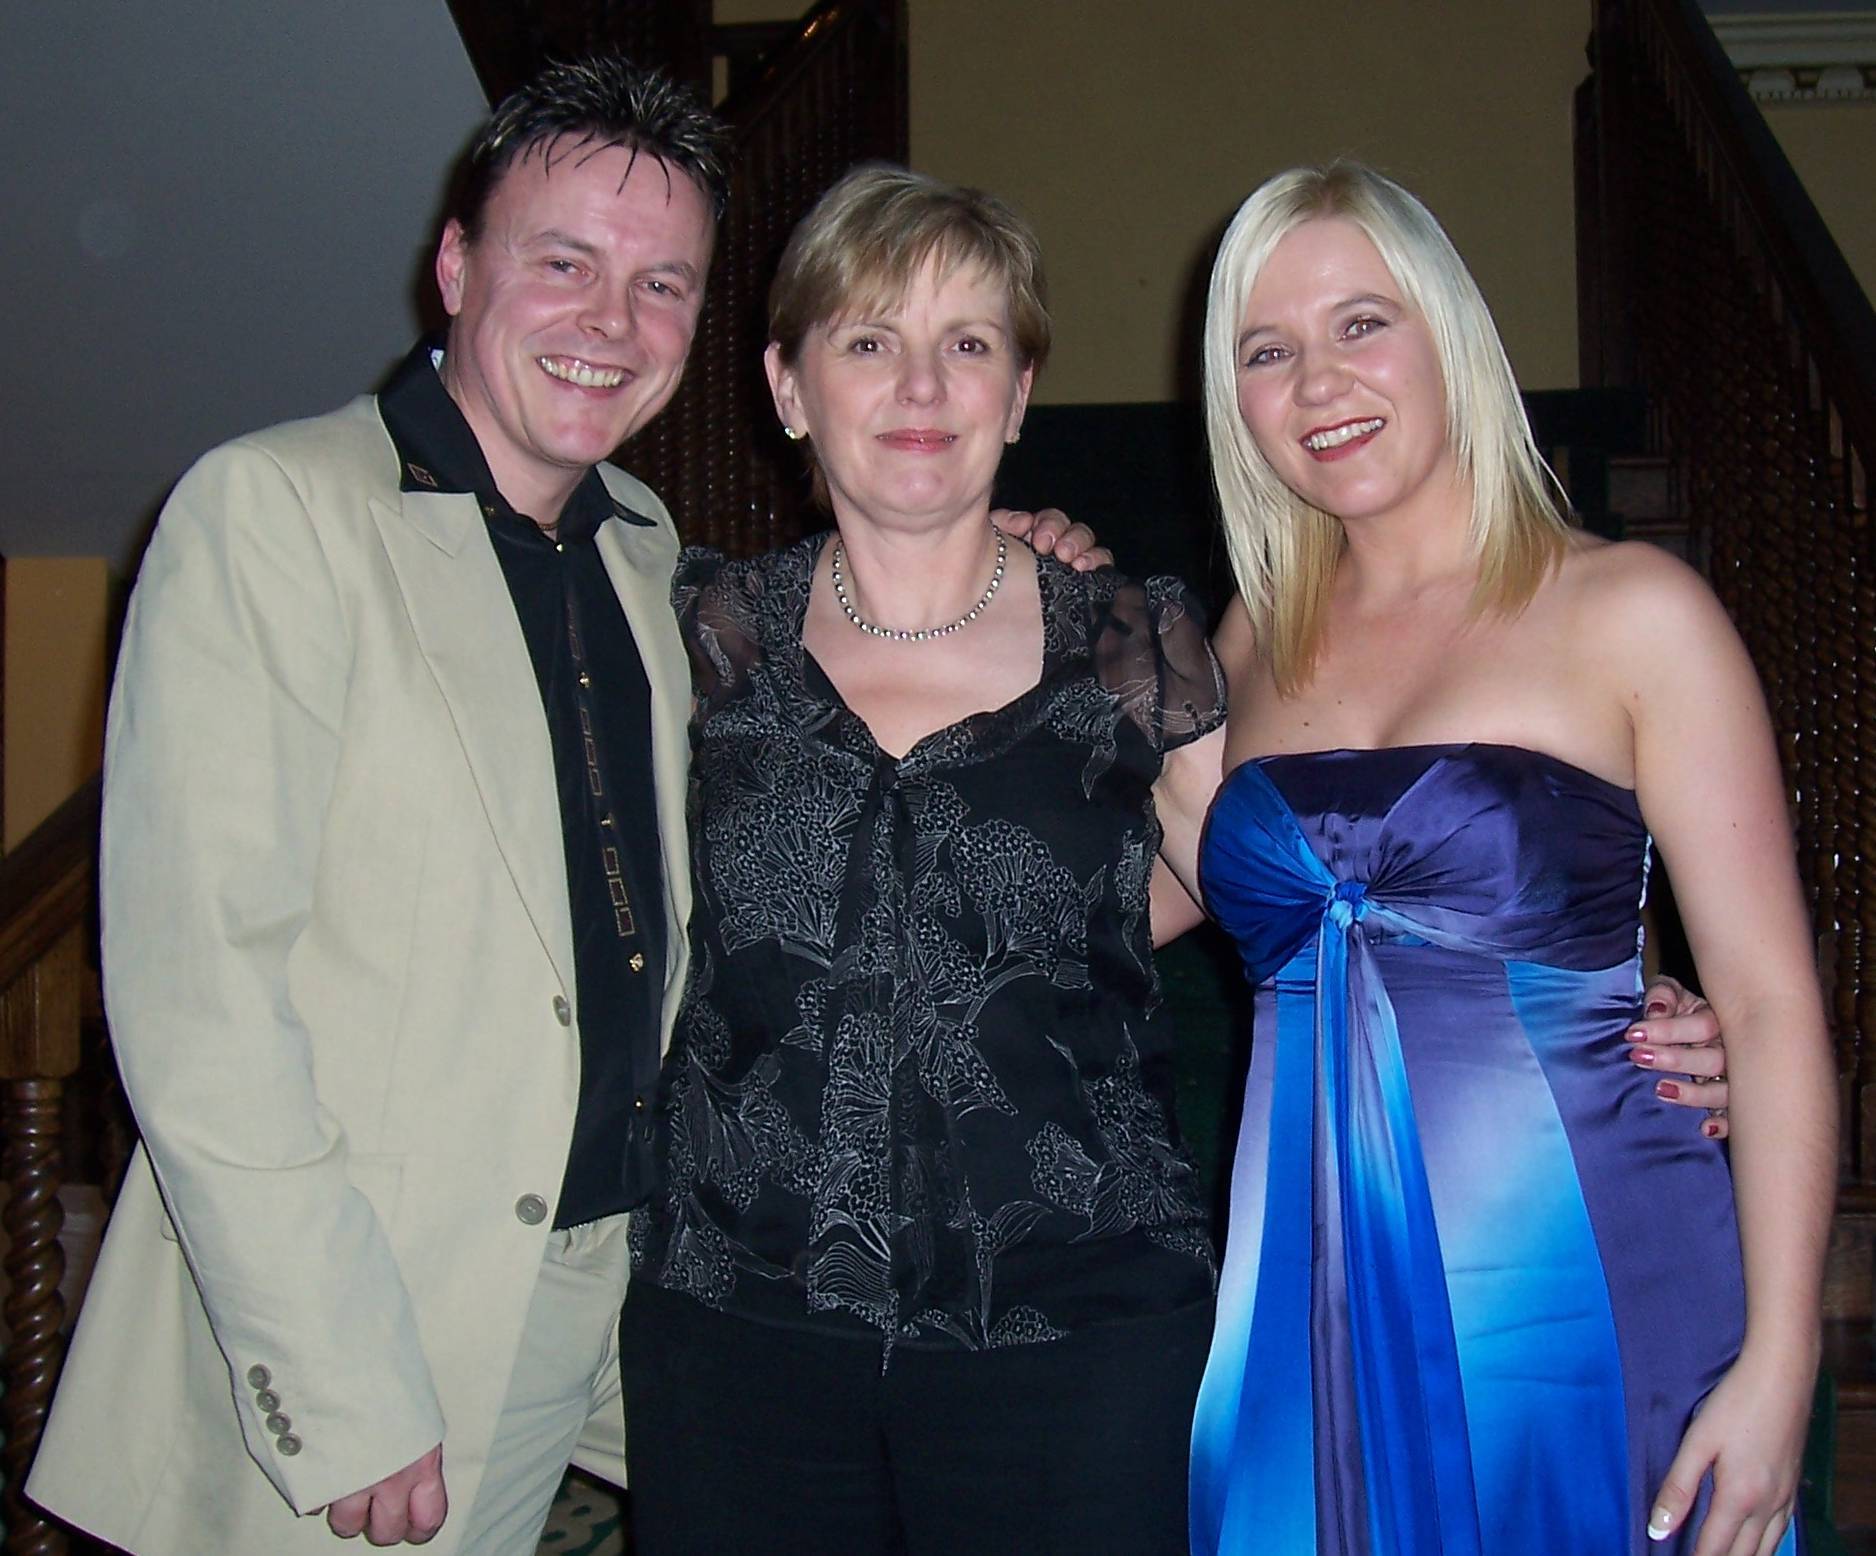 TM, Denise Frazer & FE at Awards, Setanta House Hotel, Kildare